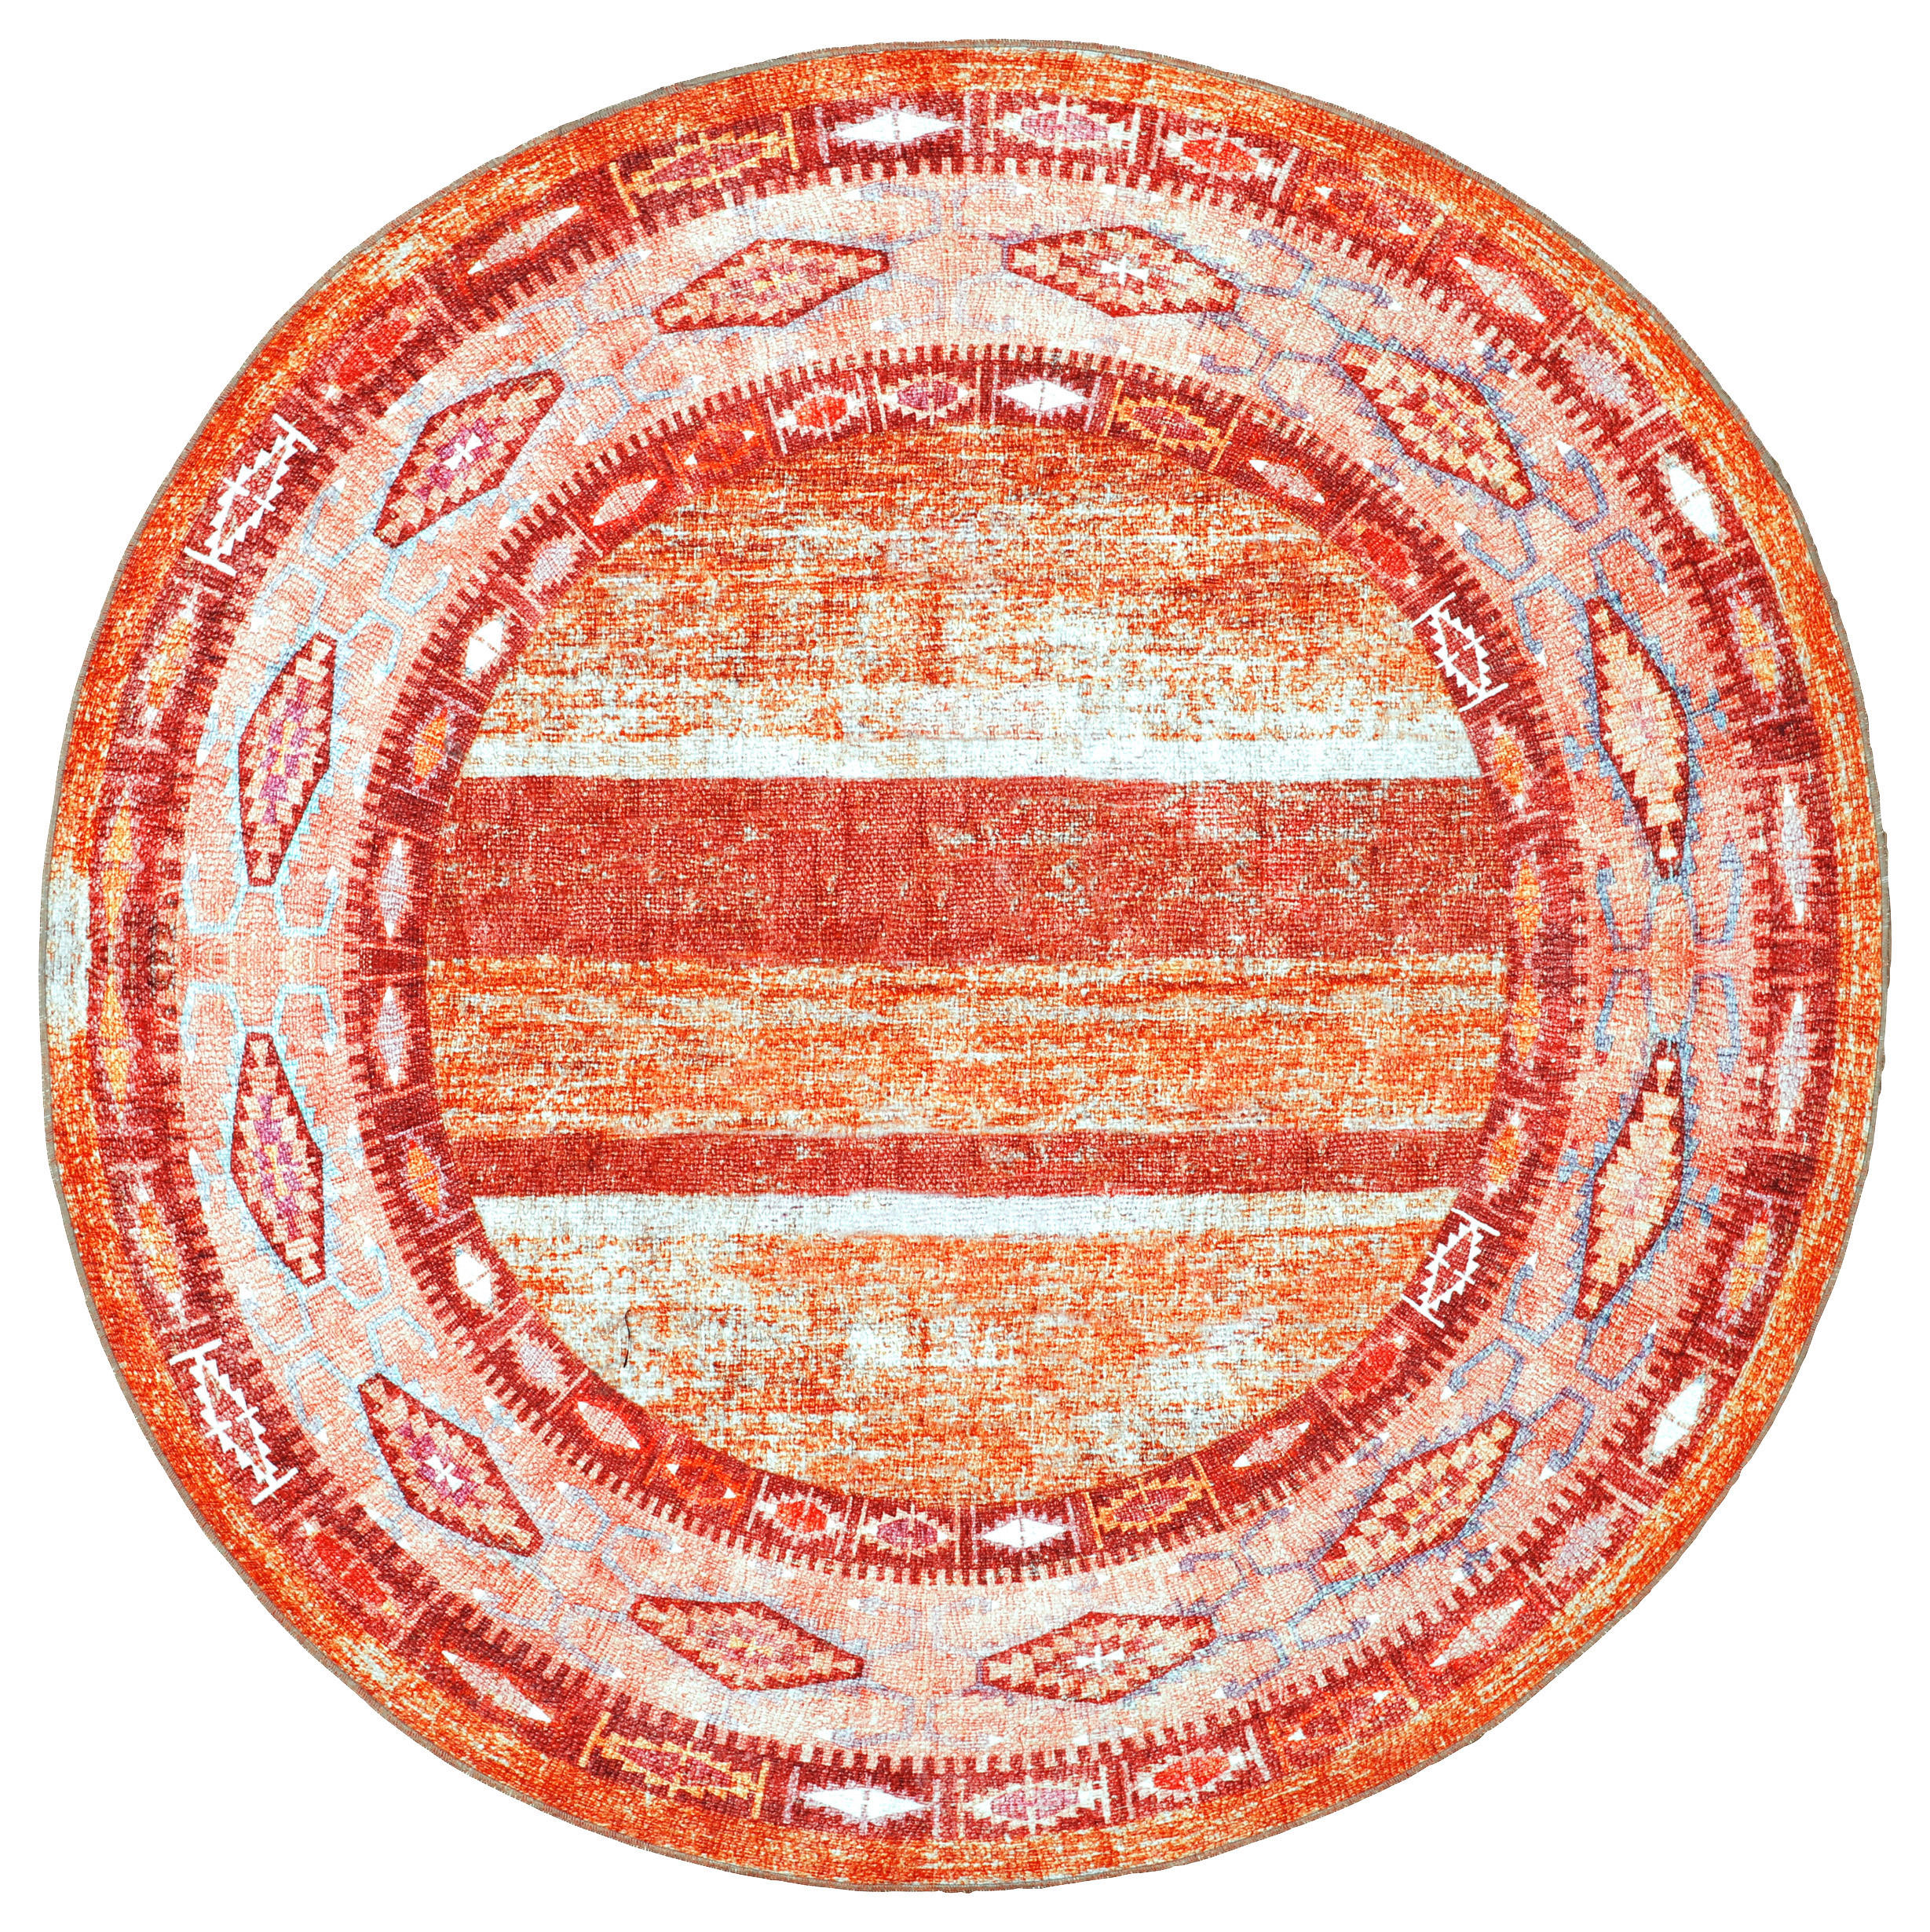 Ambia Garden VENKOVNÍ KOBEREC, 150 cm, oranžová, červená - oranžová,červená - textil